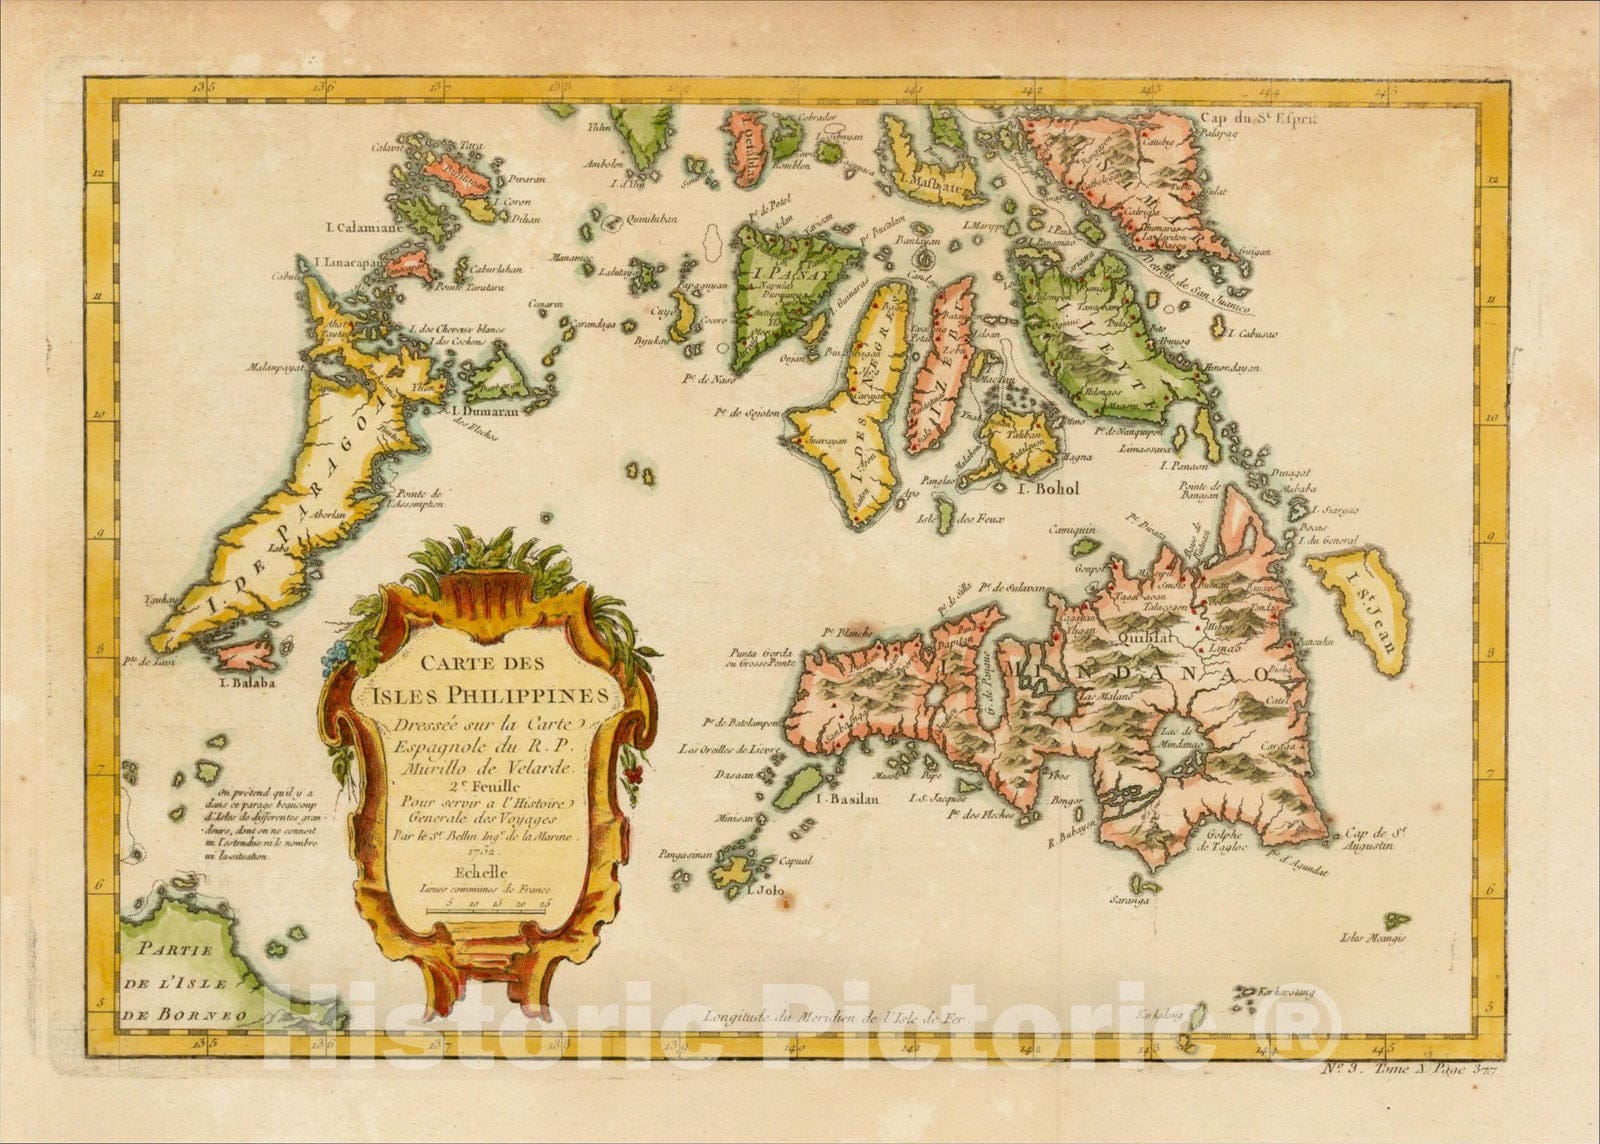 Historic Map : Carte Des Isles Philippines Dressee sur la Carte Espagnole du R.P. Murillo de Velarde. 2e Feuille, 1752, 1757, Jacques Nicolas Bellin, v1, Vintage Wall Art